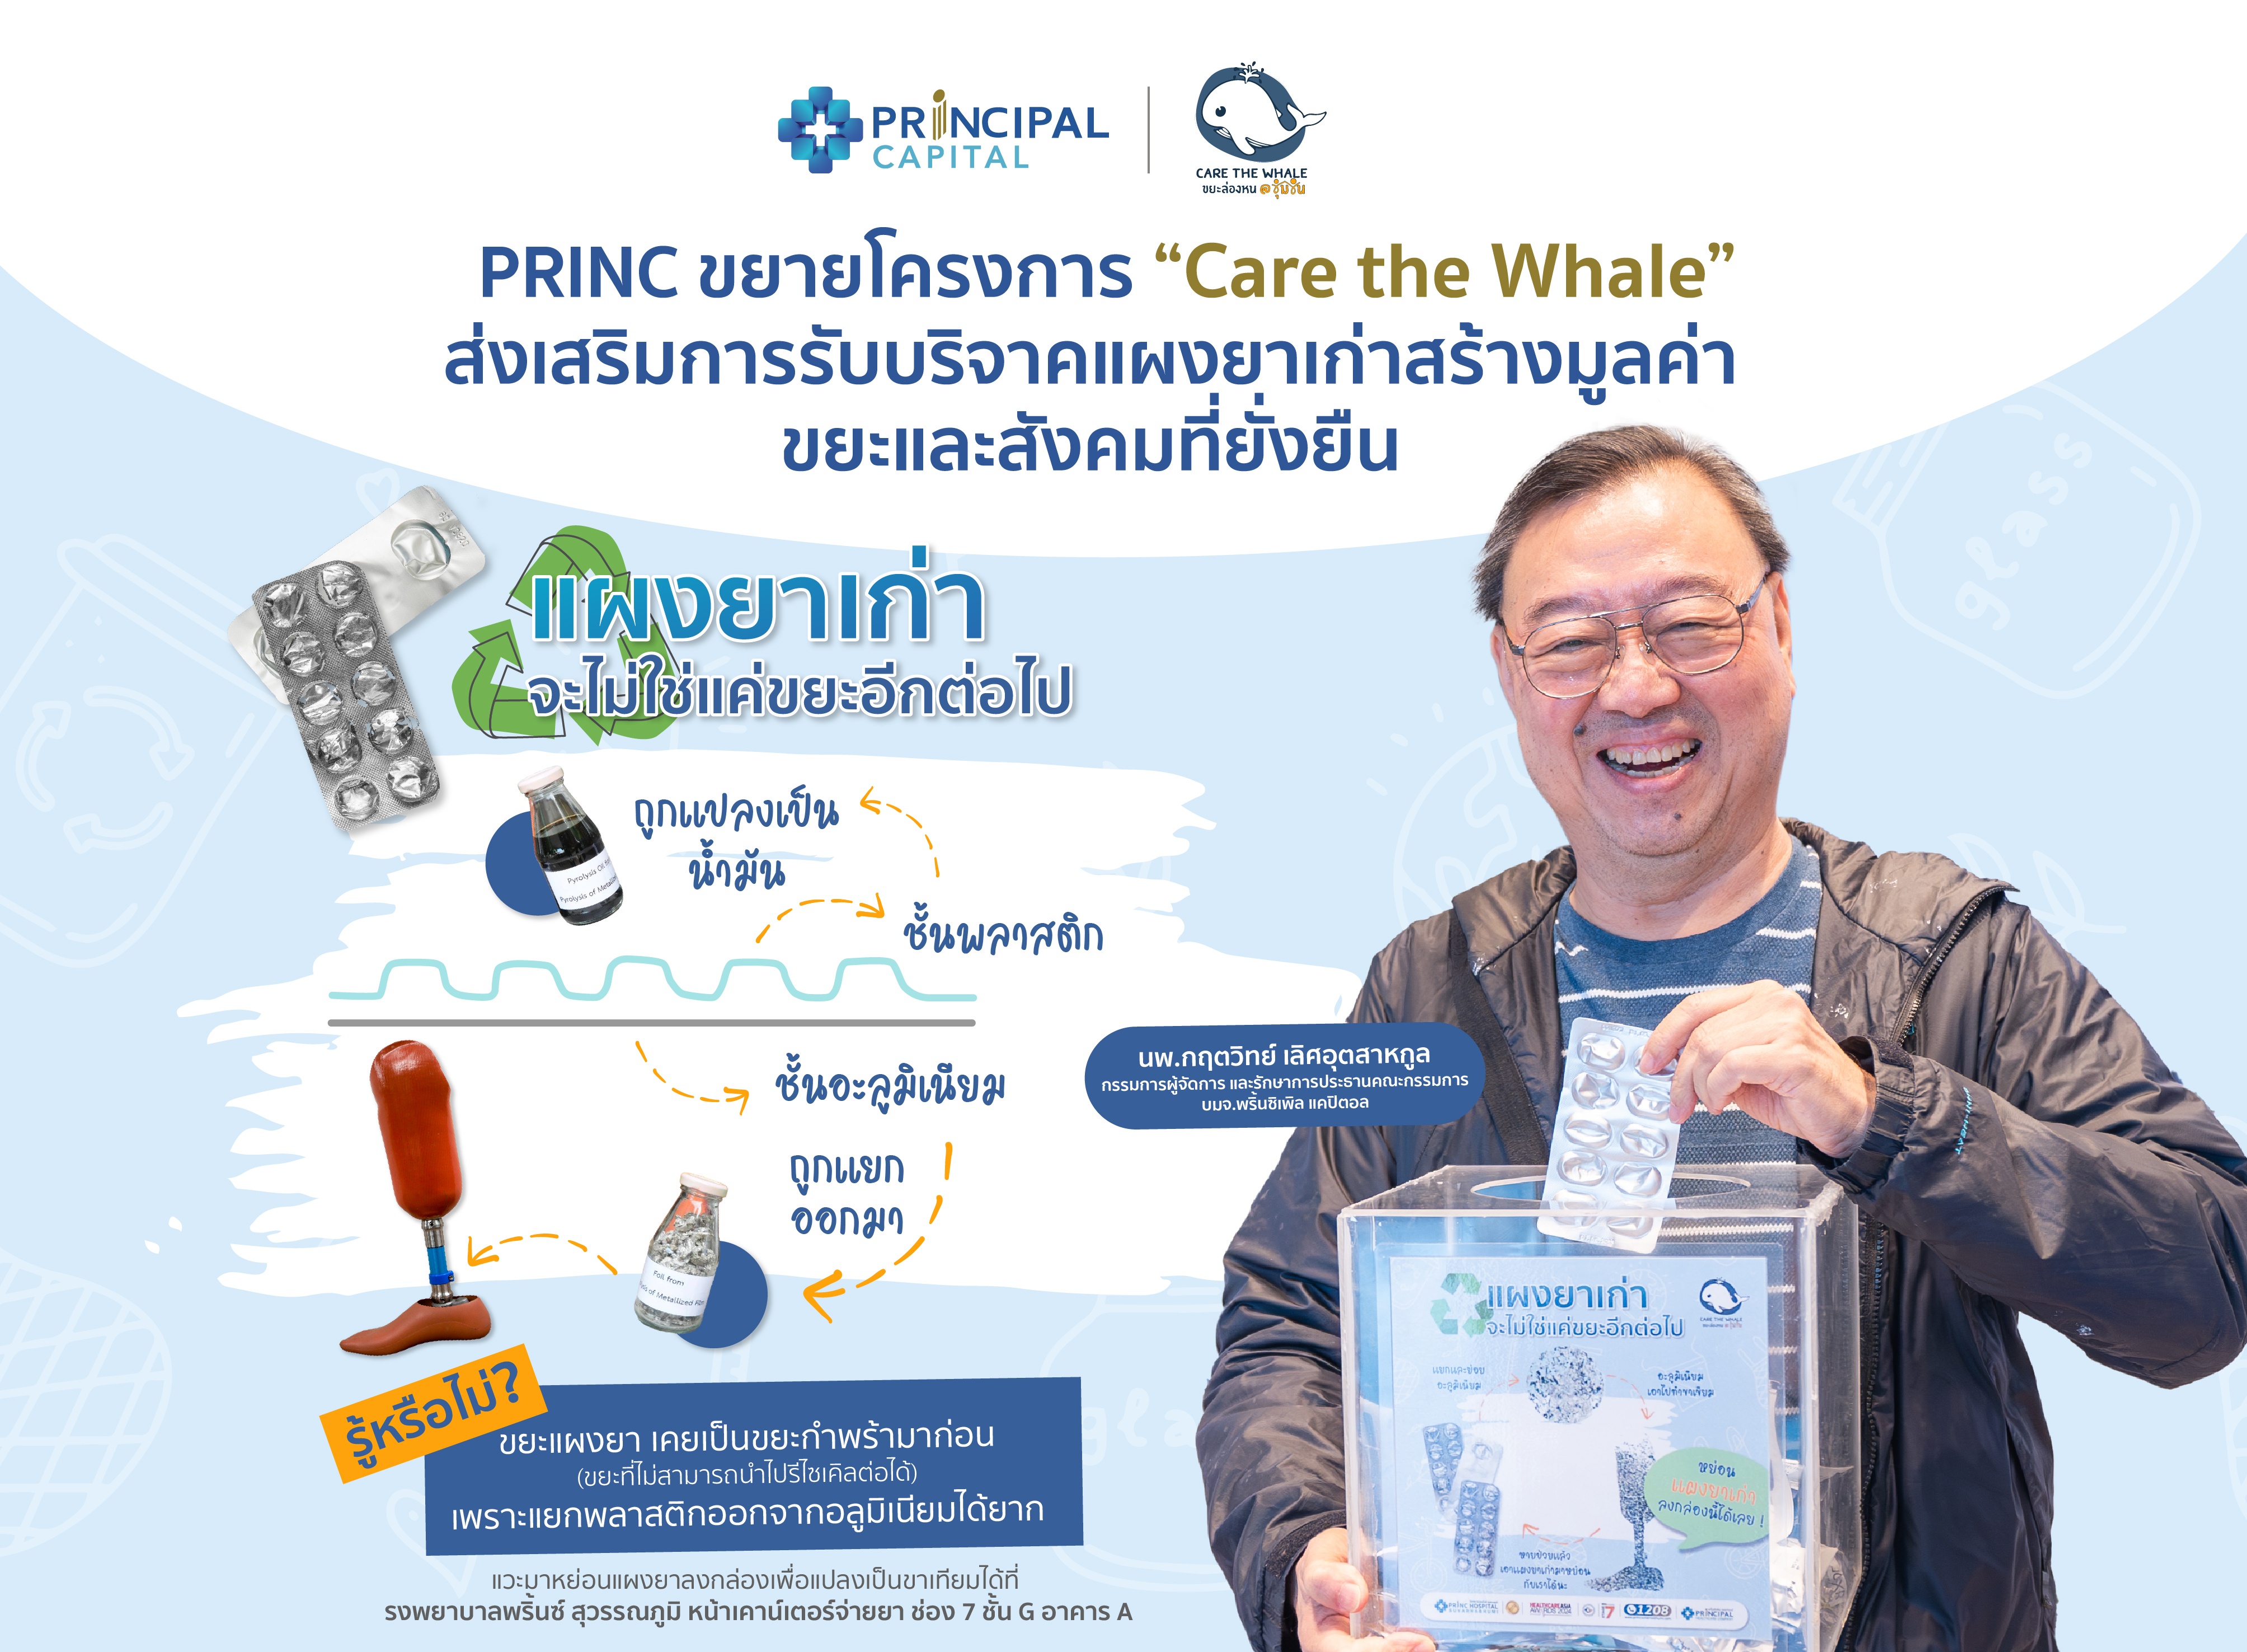 PRINC เปิดรับ “ขยะแผงยาเก่า” ส่งวัดจากแดง แปลงขยะเป็นทุนมอบมูลนิธิขาเทียมฯ ช่วยผู้พิการ ในโครงการ Care The whale ขยะล่องหน @ ชุมชนปีที่ 4